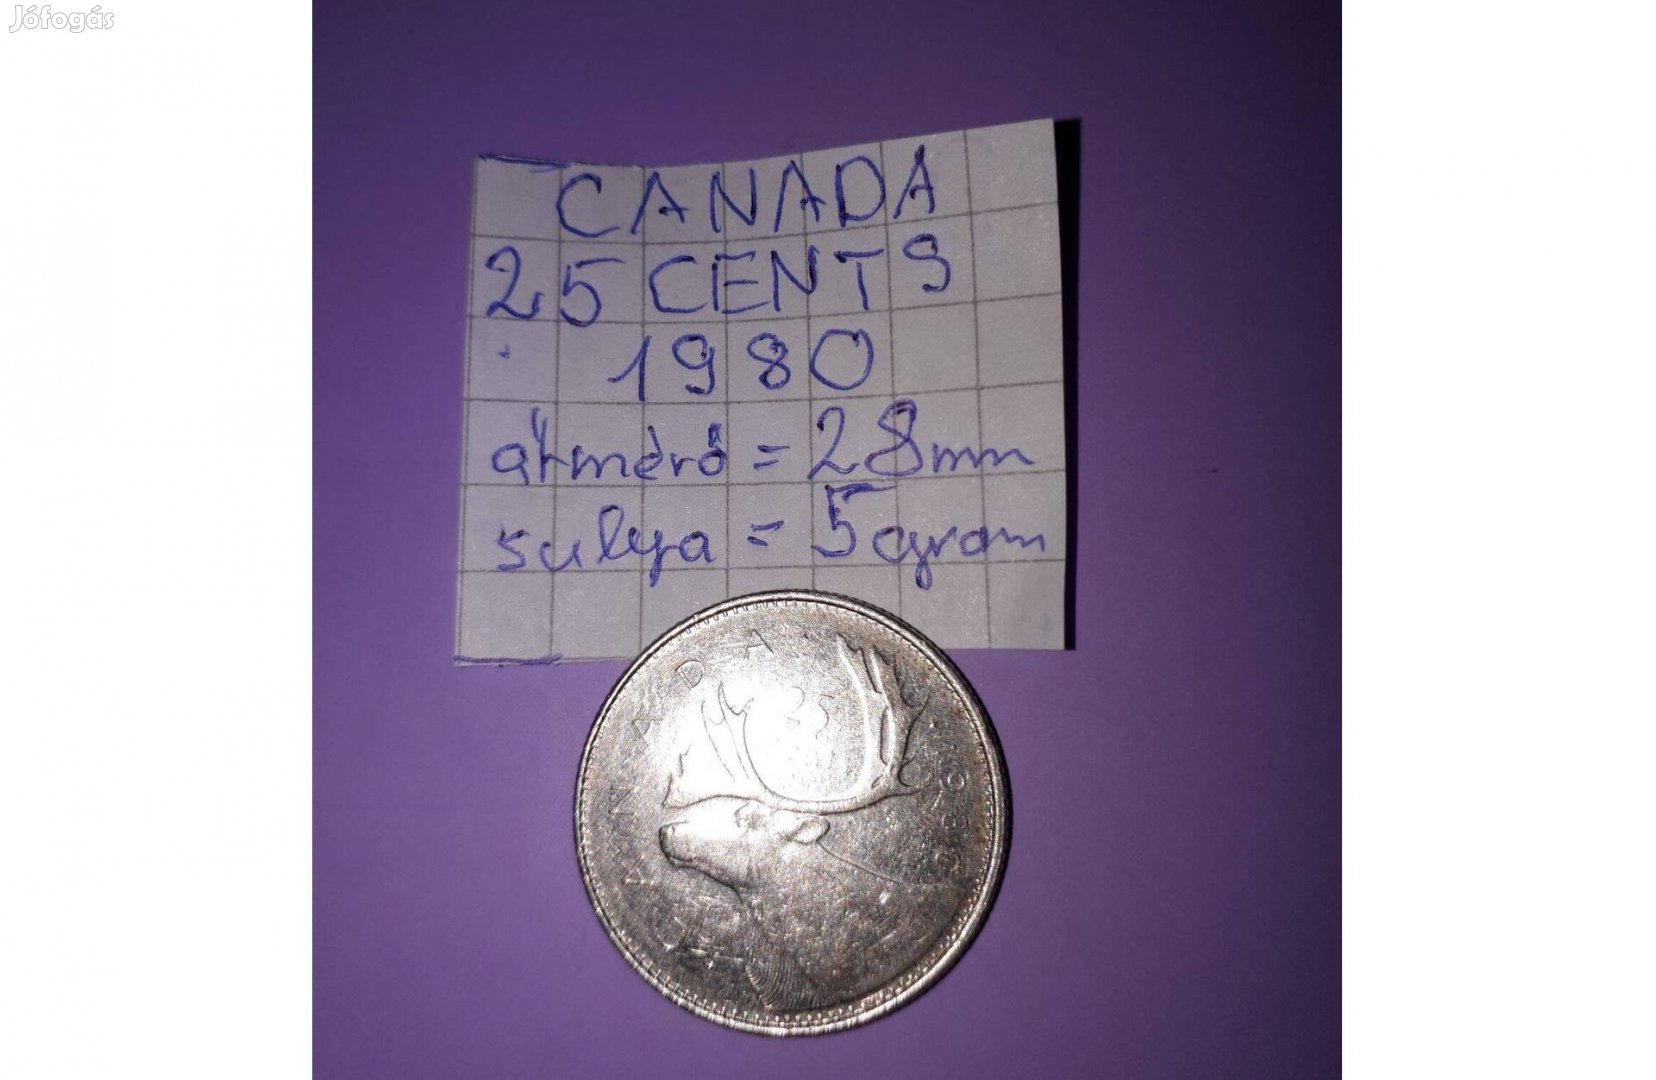 Canada 25 cent 1980